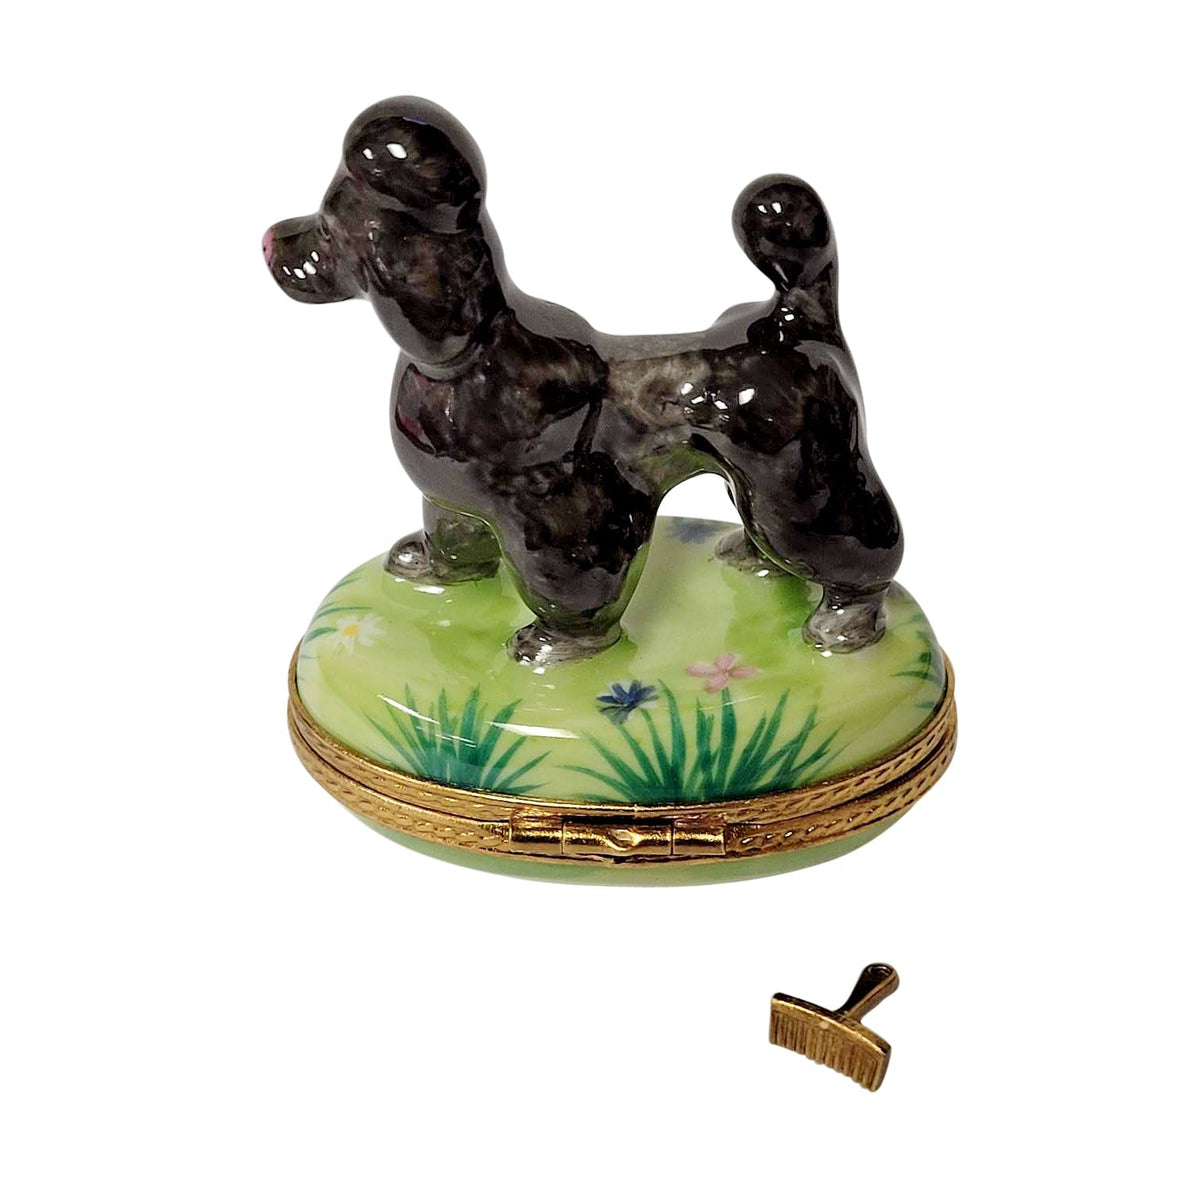 Black Poodle w Brush On Green Base Dog